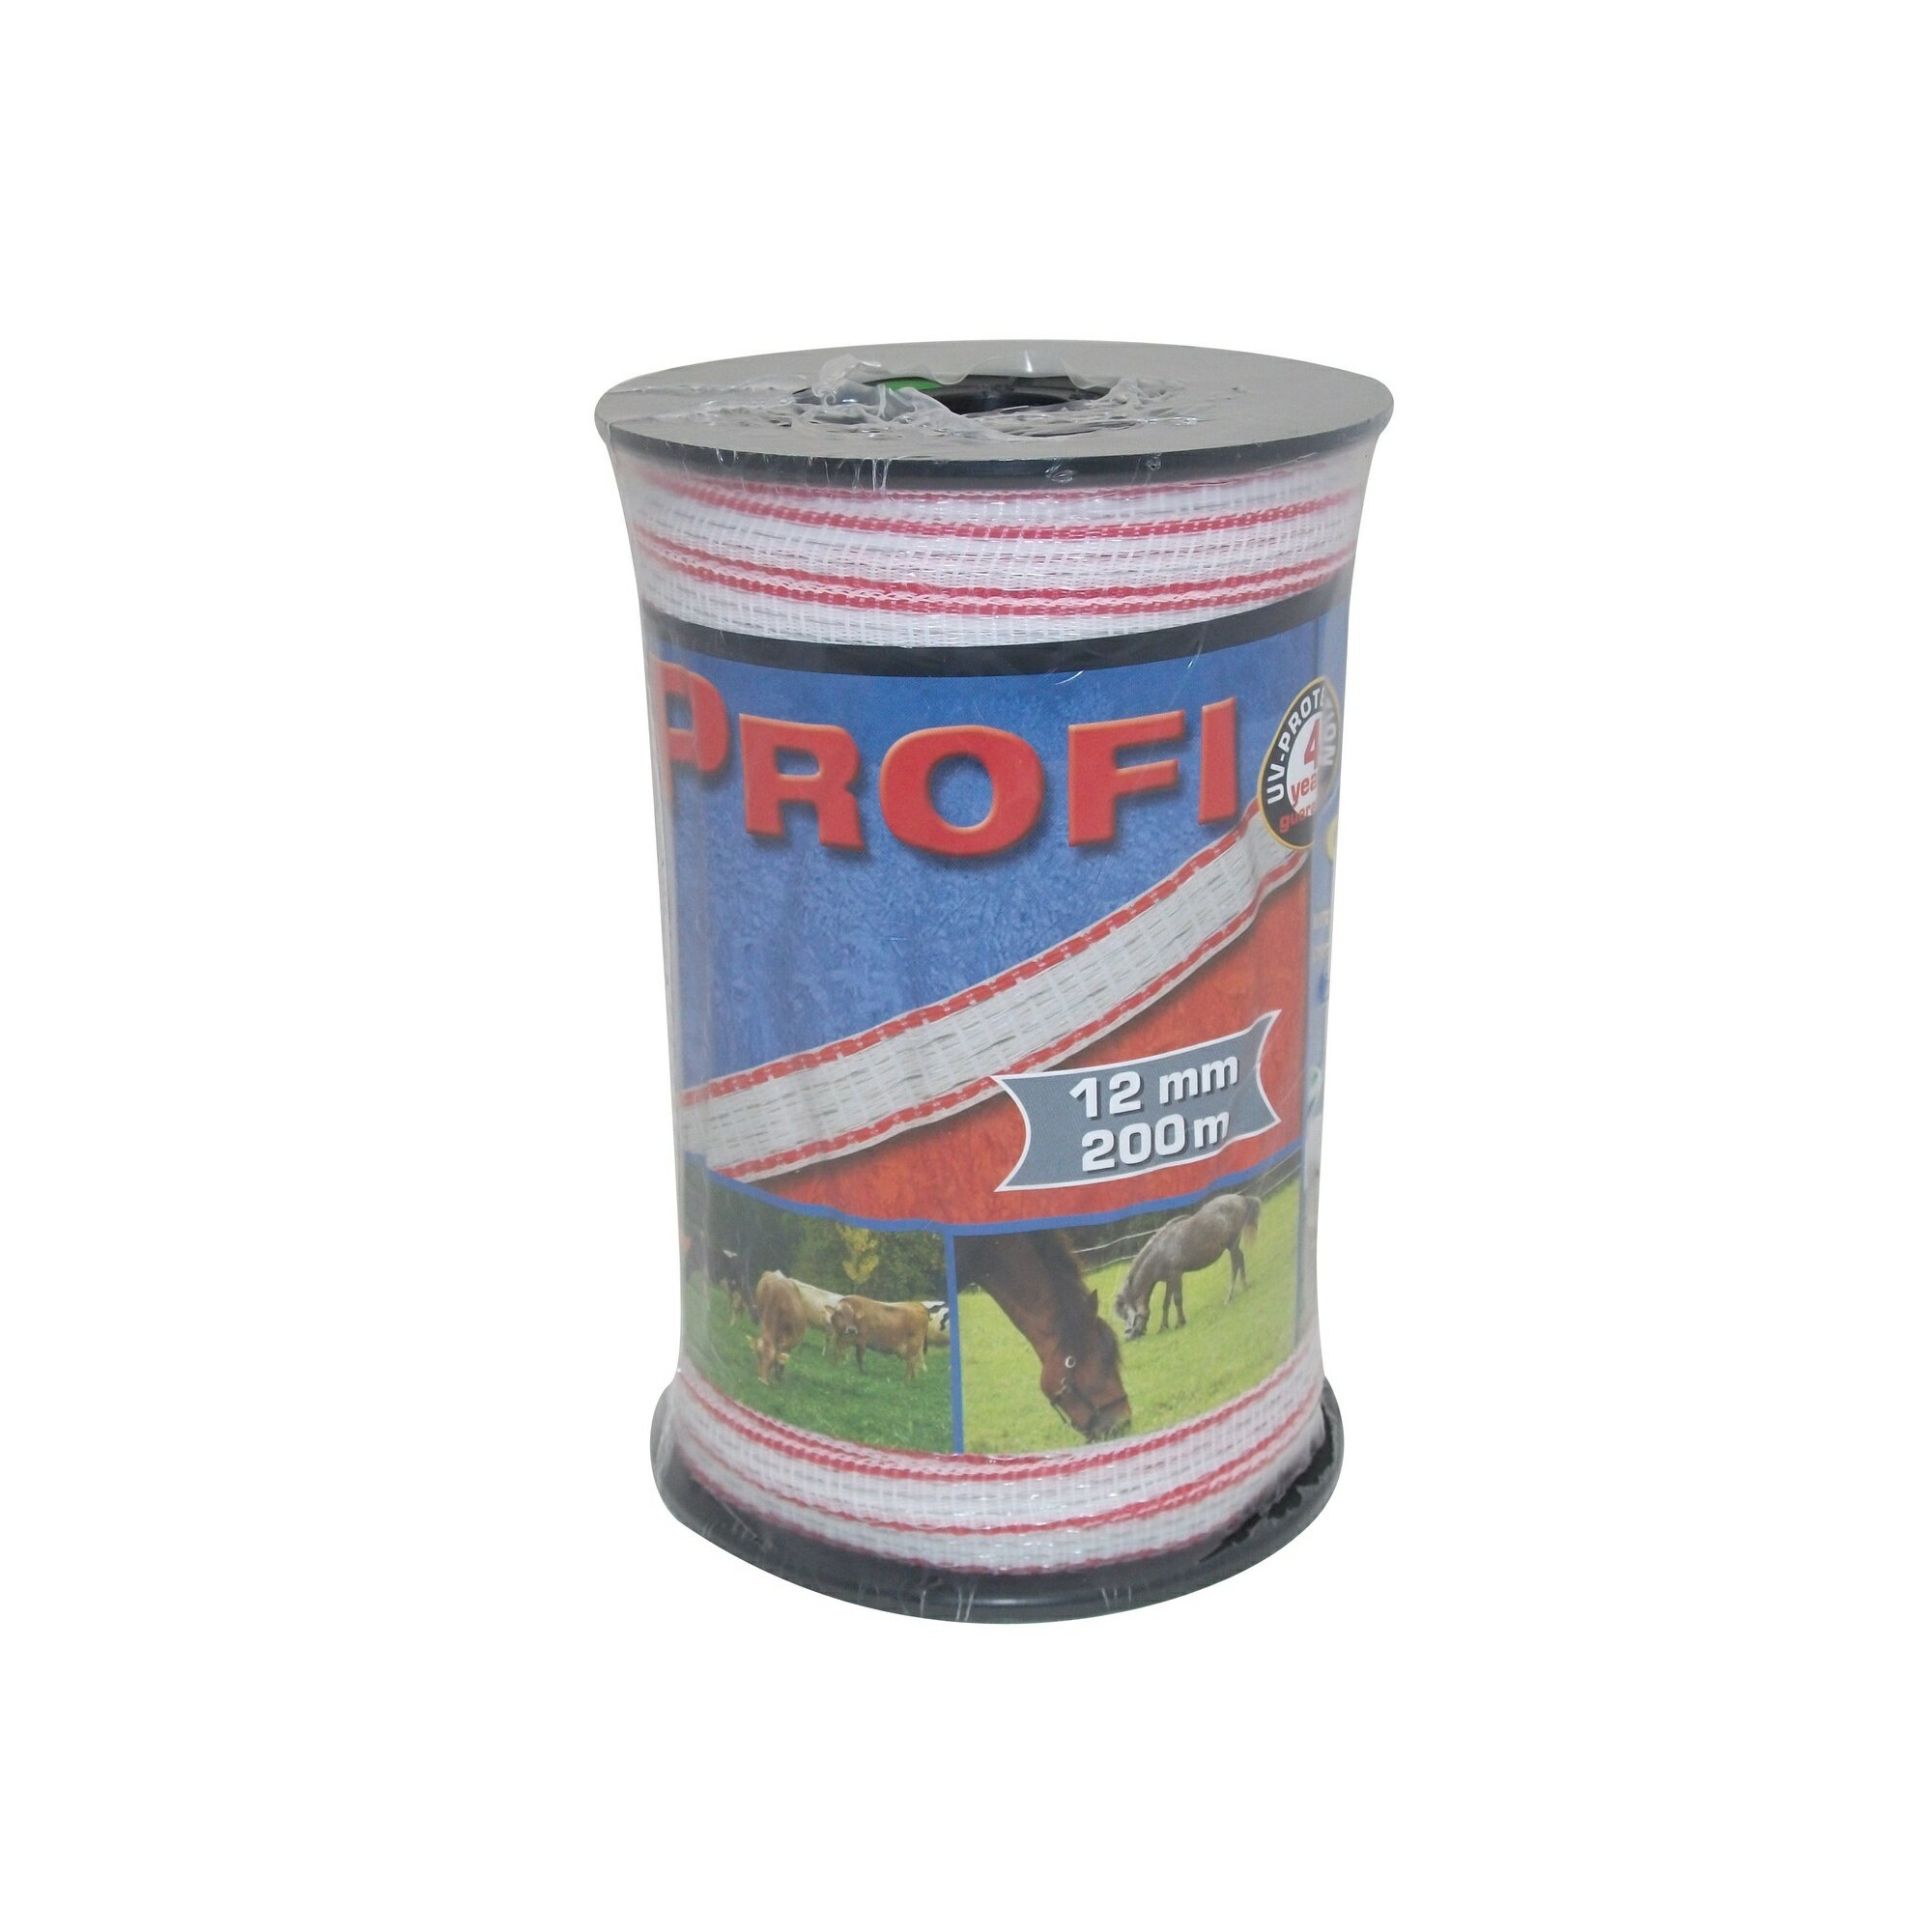 プロフィ (Profi) フェンス用 テープ 囲い柵 家畜 飼育用品 【海外通販】